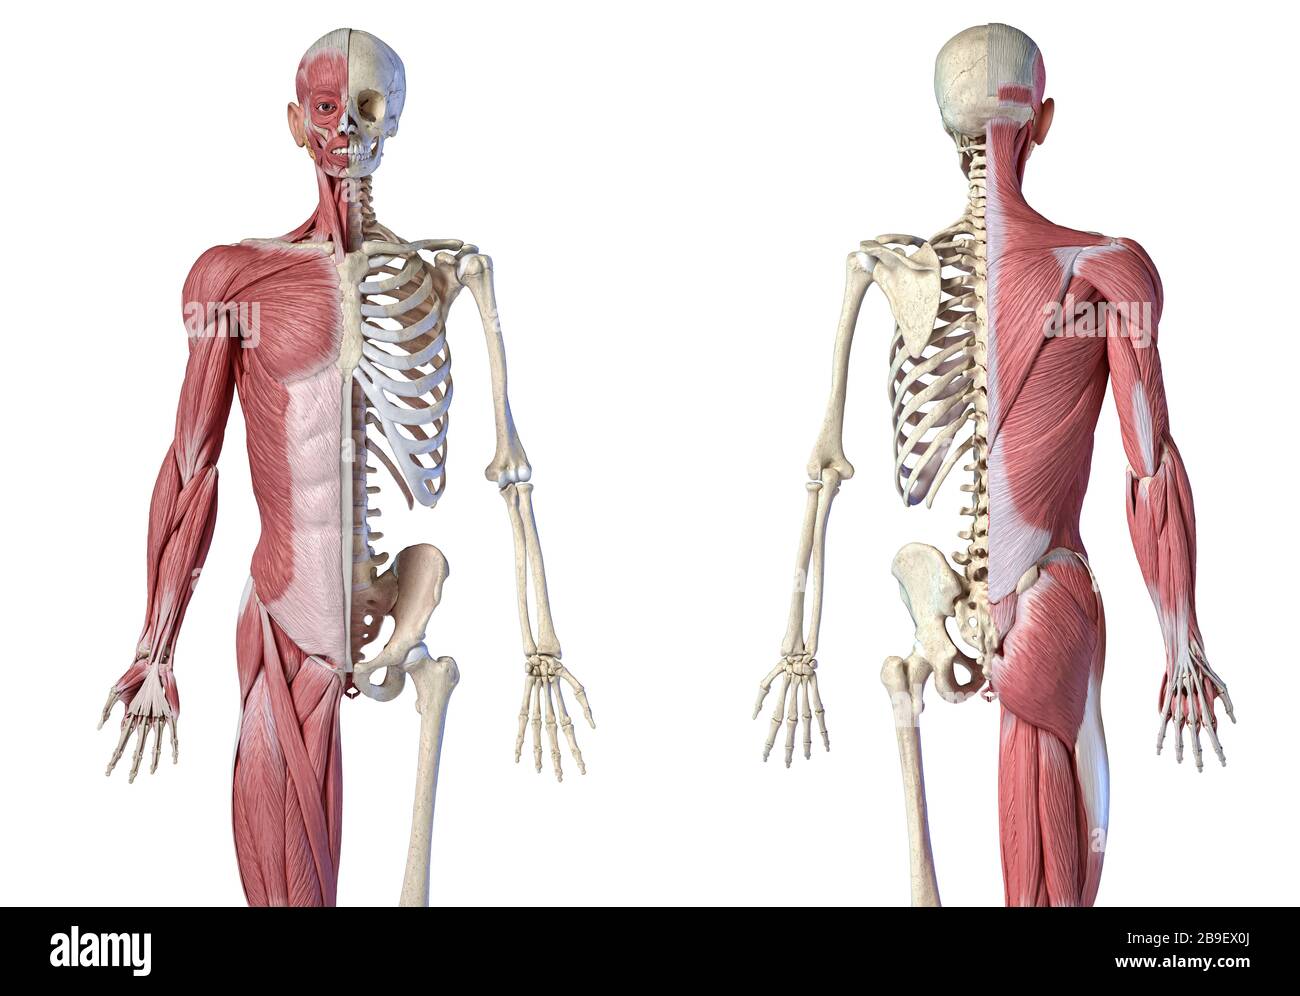 Oberkörper männliche Anatomie von Muskel- und Skelettsystemen, weißer Hintergrund. Stockfoto